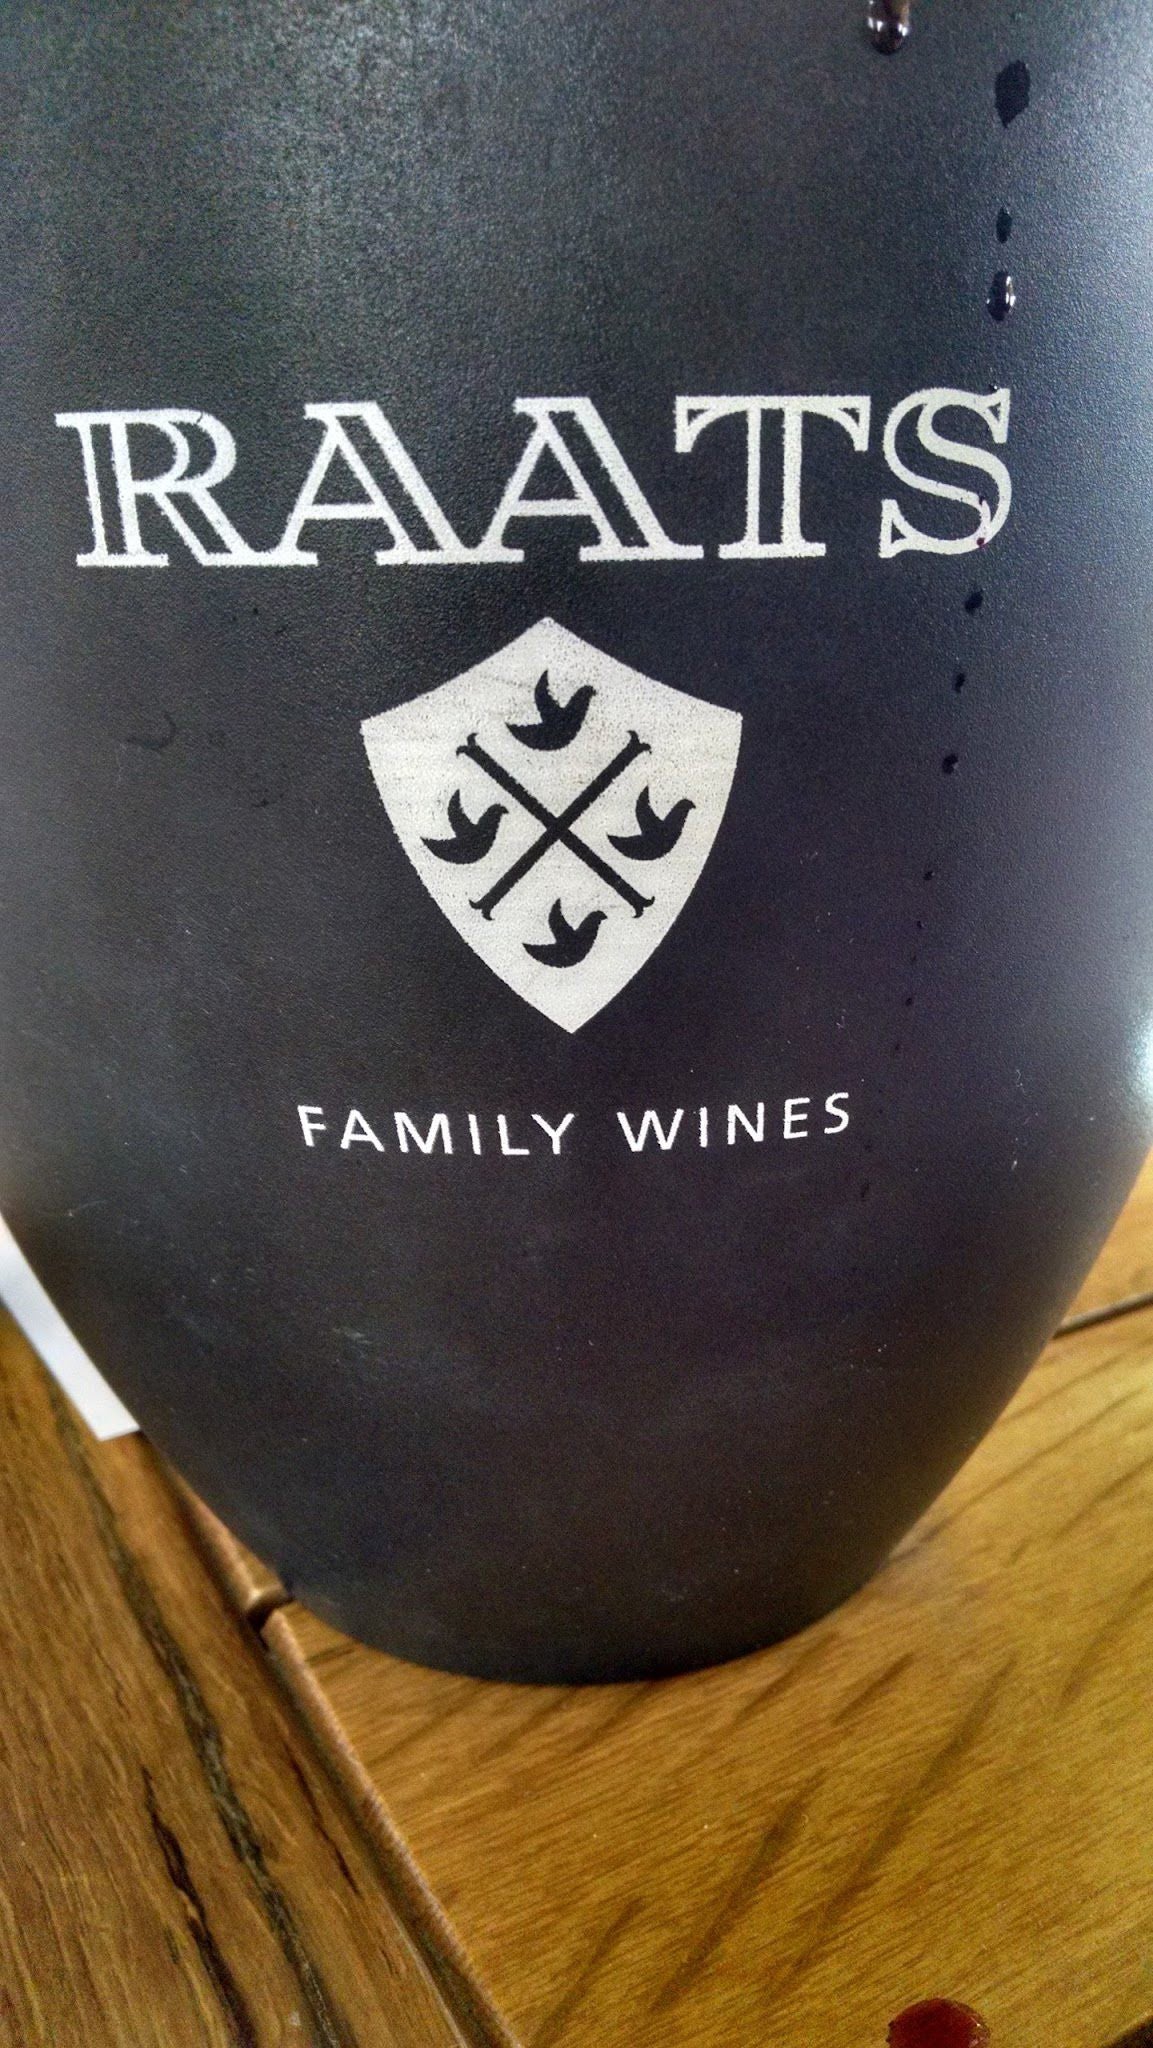  Raats Family Wines